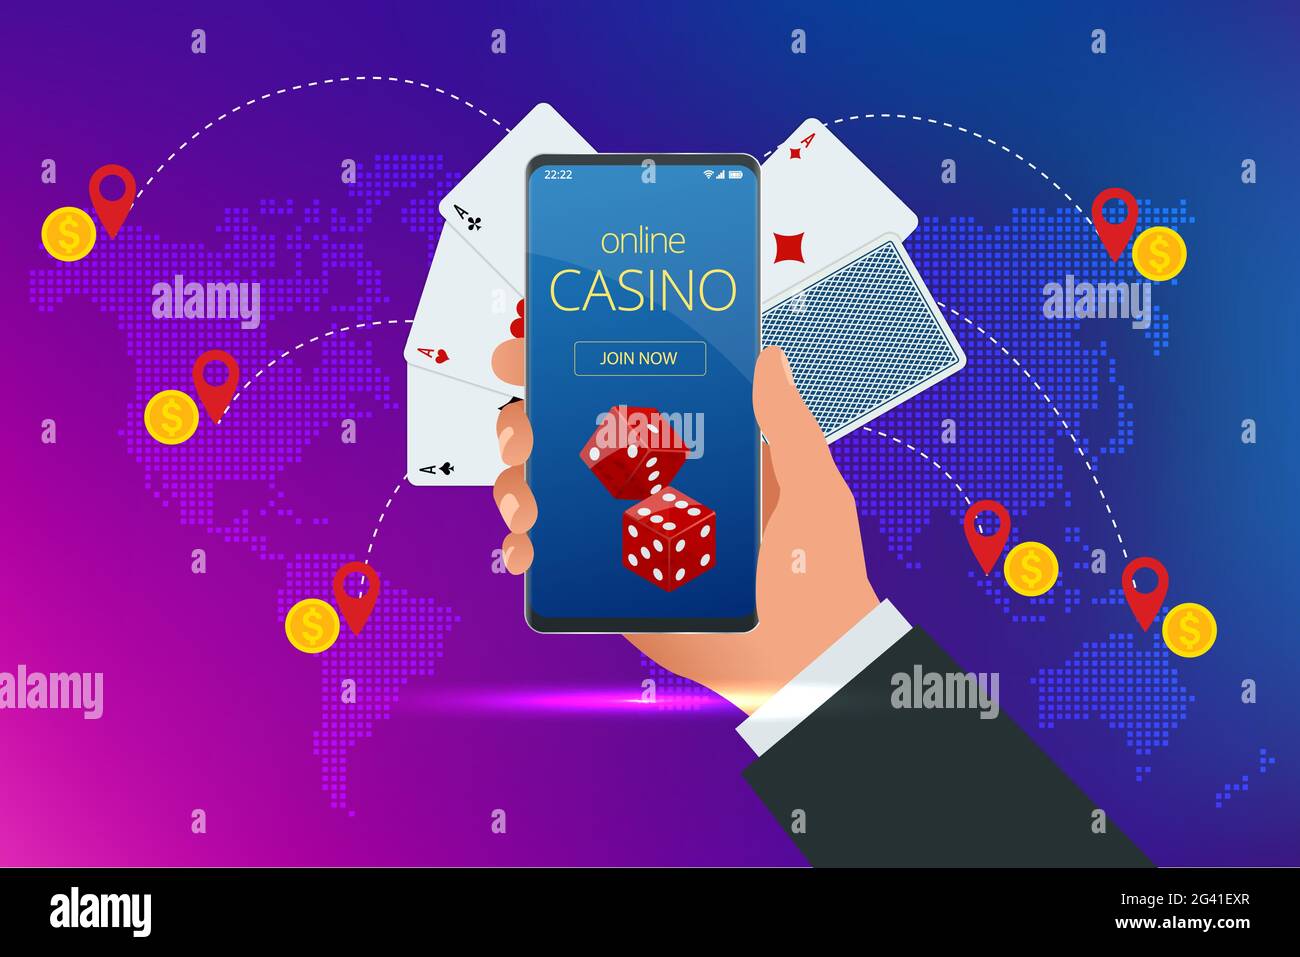 jugar en el casino en línea - ¡Relájate, es hora de jugar!